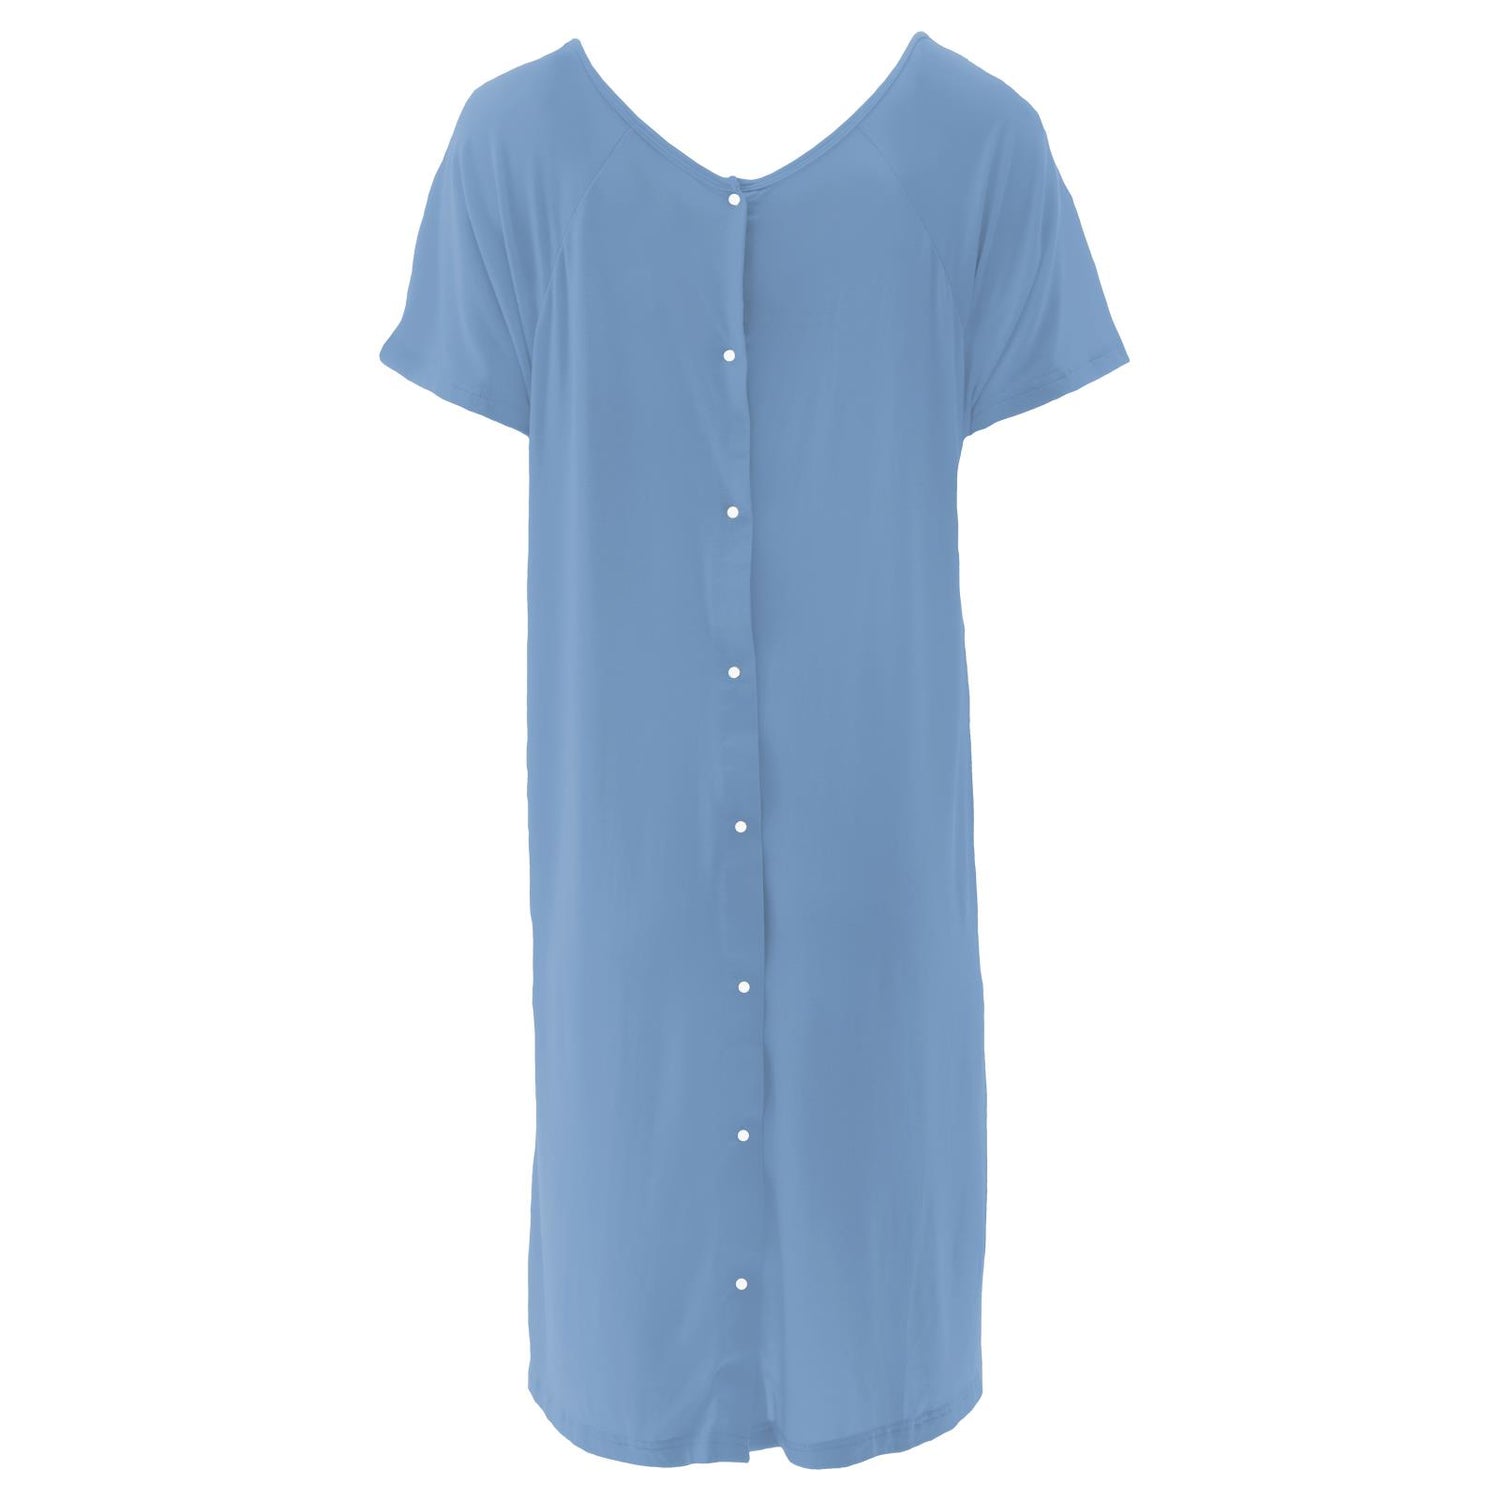 Women's Hospital Gown in Dream Blue